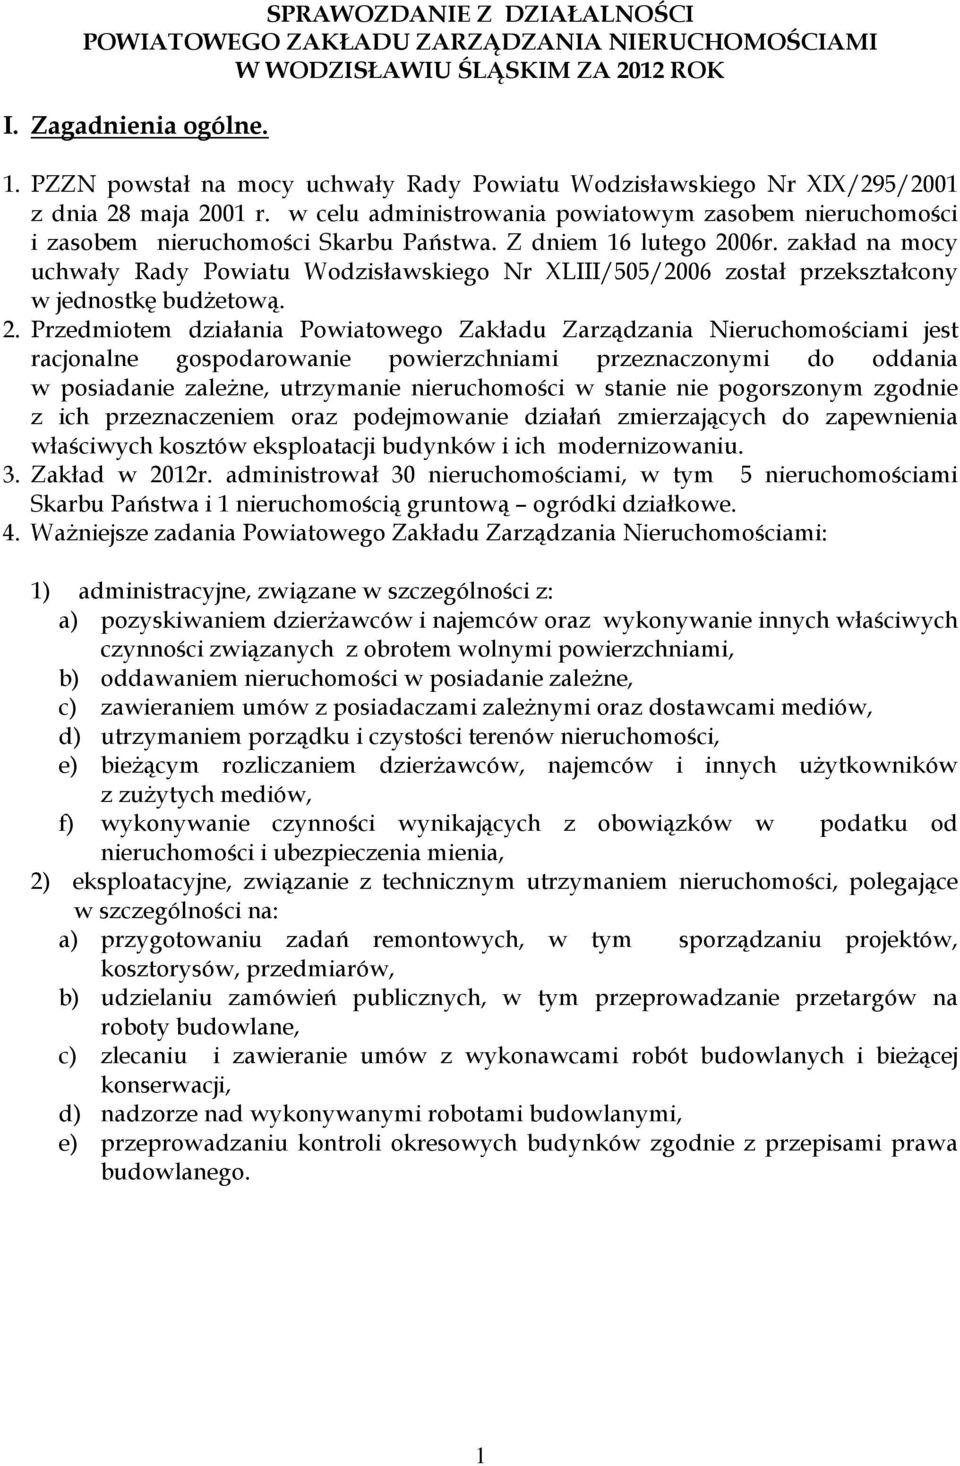 Z dniem 16 lutego 006r. zakład na mocy uchwały Rady Powiatu Wodzisławskiego Nr XLIII/505/006 został przekształcony w jednostkę budżetową.